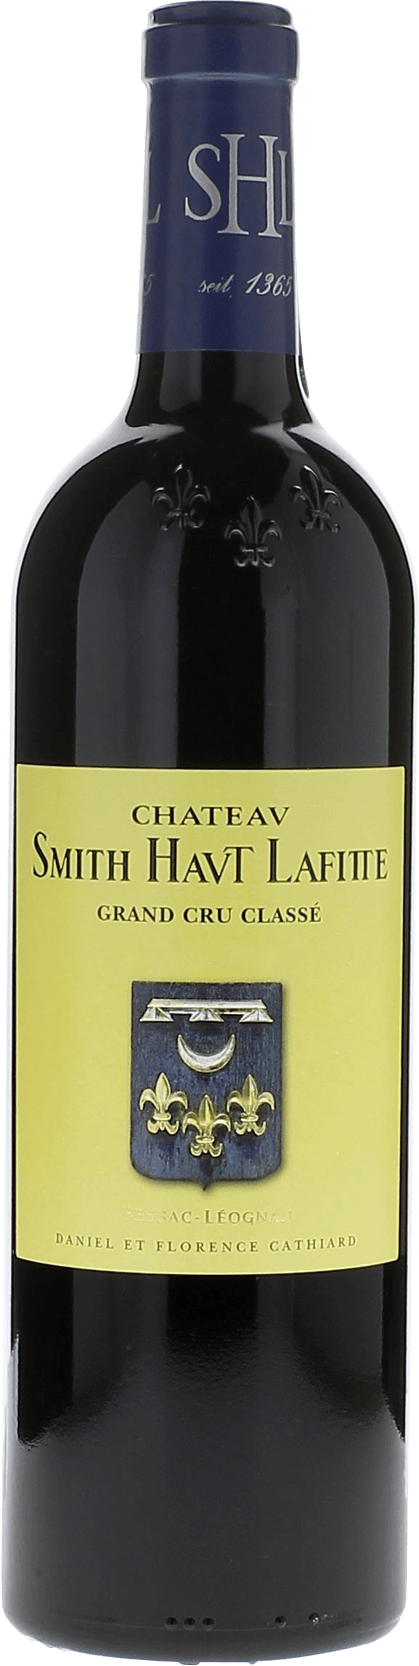 Smith haut lafitte 2021 Grand Cru Class Pessac-Lognan, Bordeaux rouge